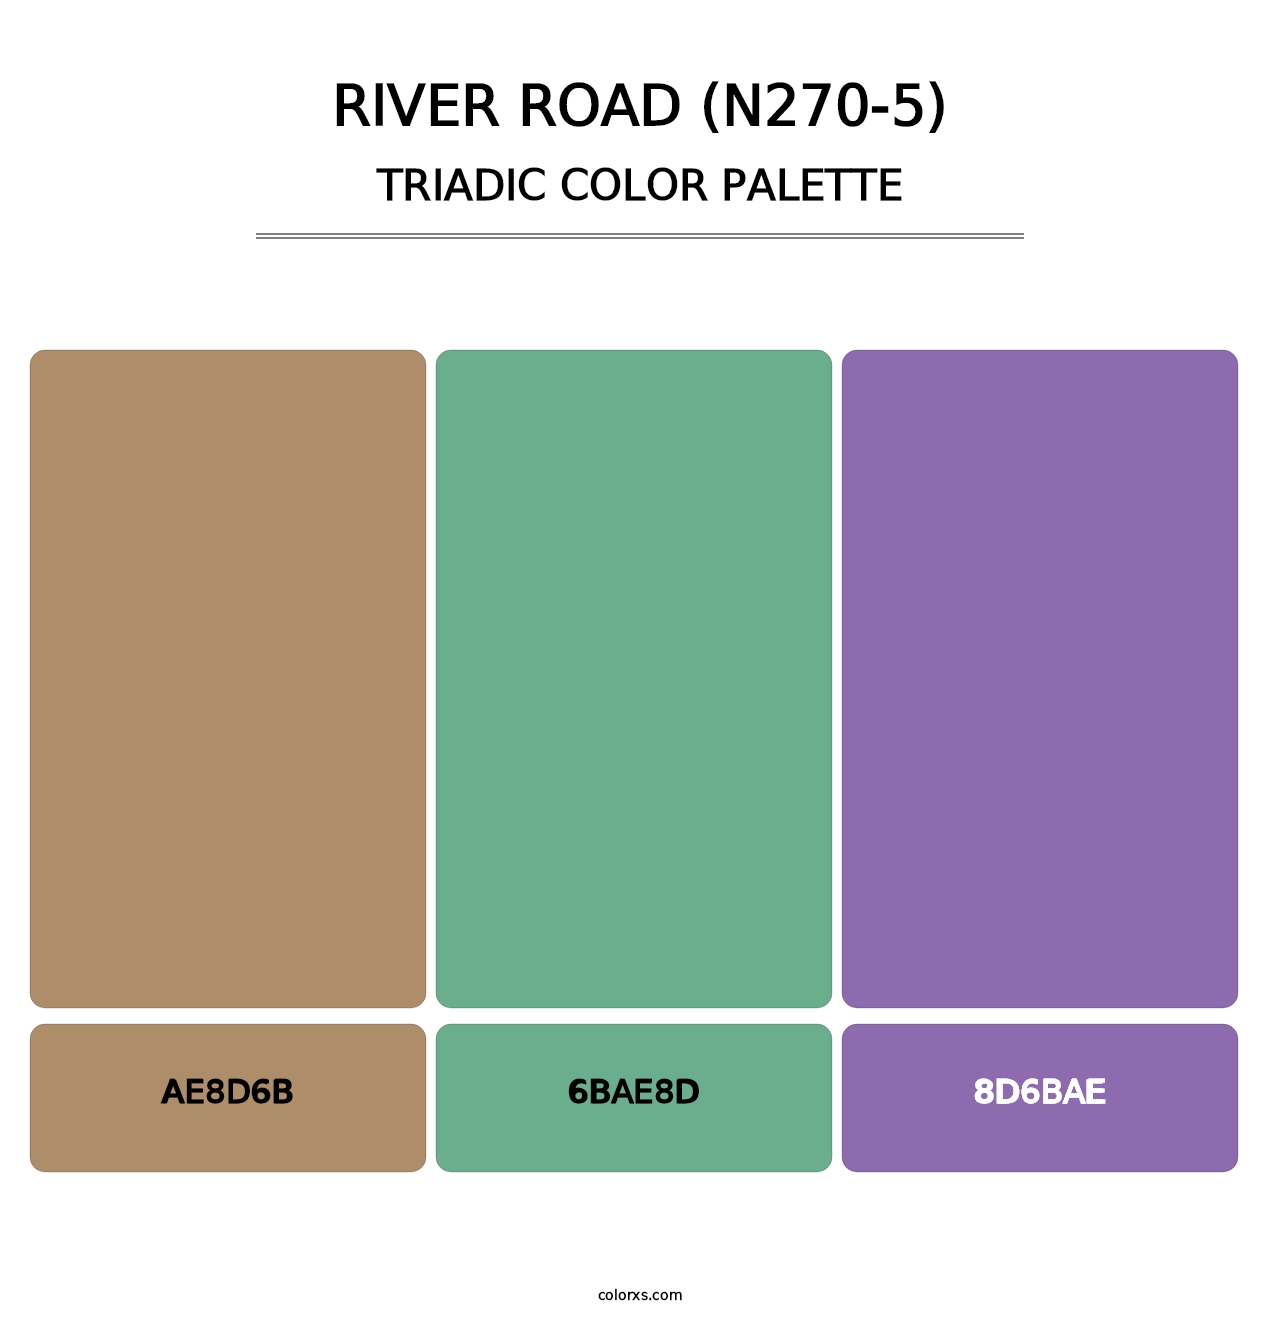 River Road (N270-5) - Triadic Color Palette